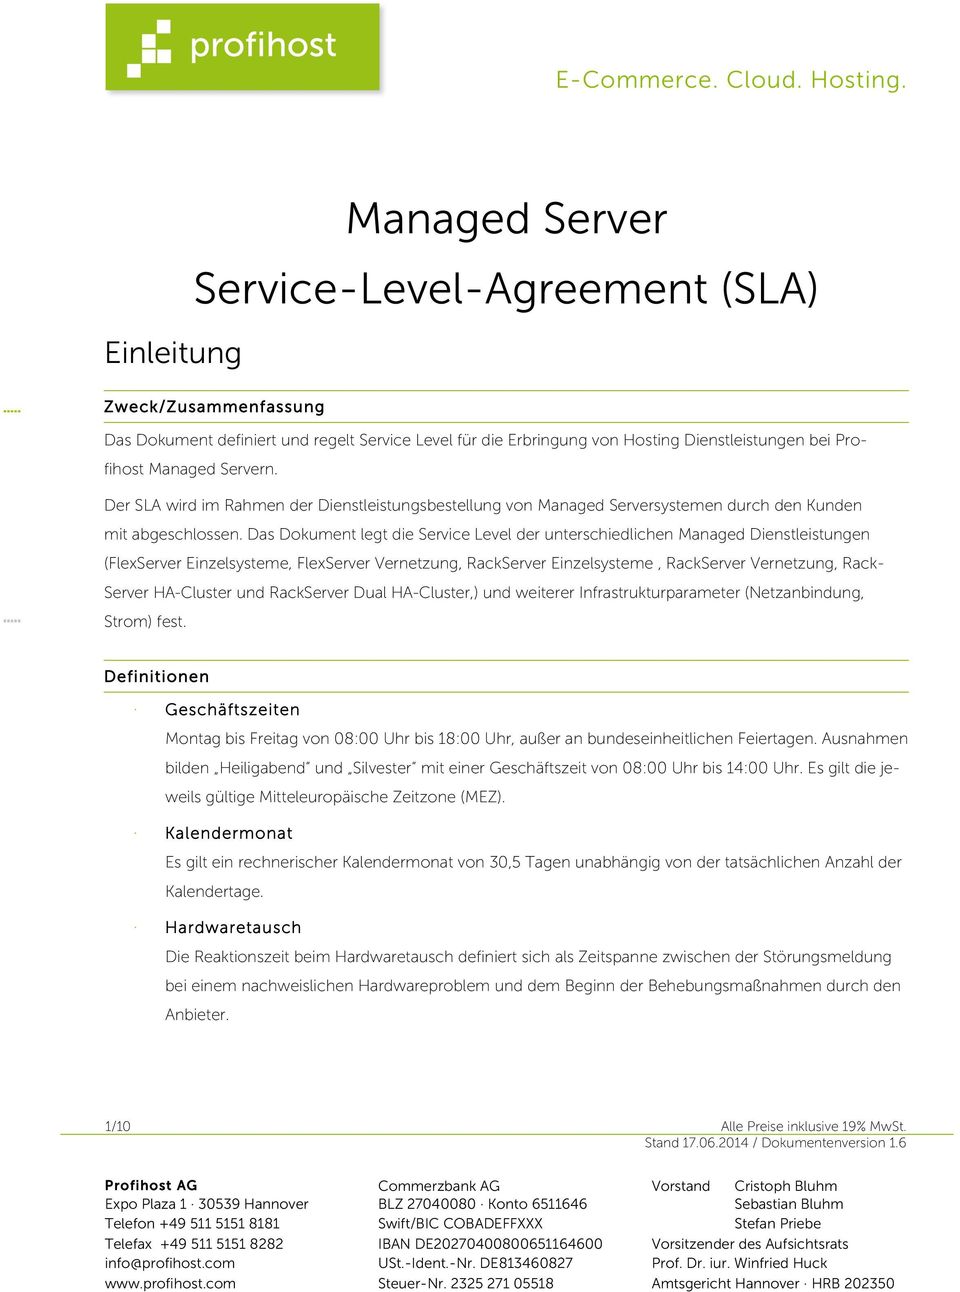 Das Dokument legt die Service Level der unterschiedlichen Dienstleistungen (FlexServer Einzelsysteme, FlexServer Vernetzung, RackServer Einzelsysteme, RackServer Vernetzung, Rack- Server HA-Cluster